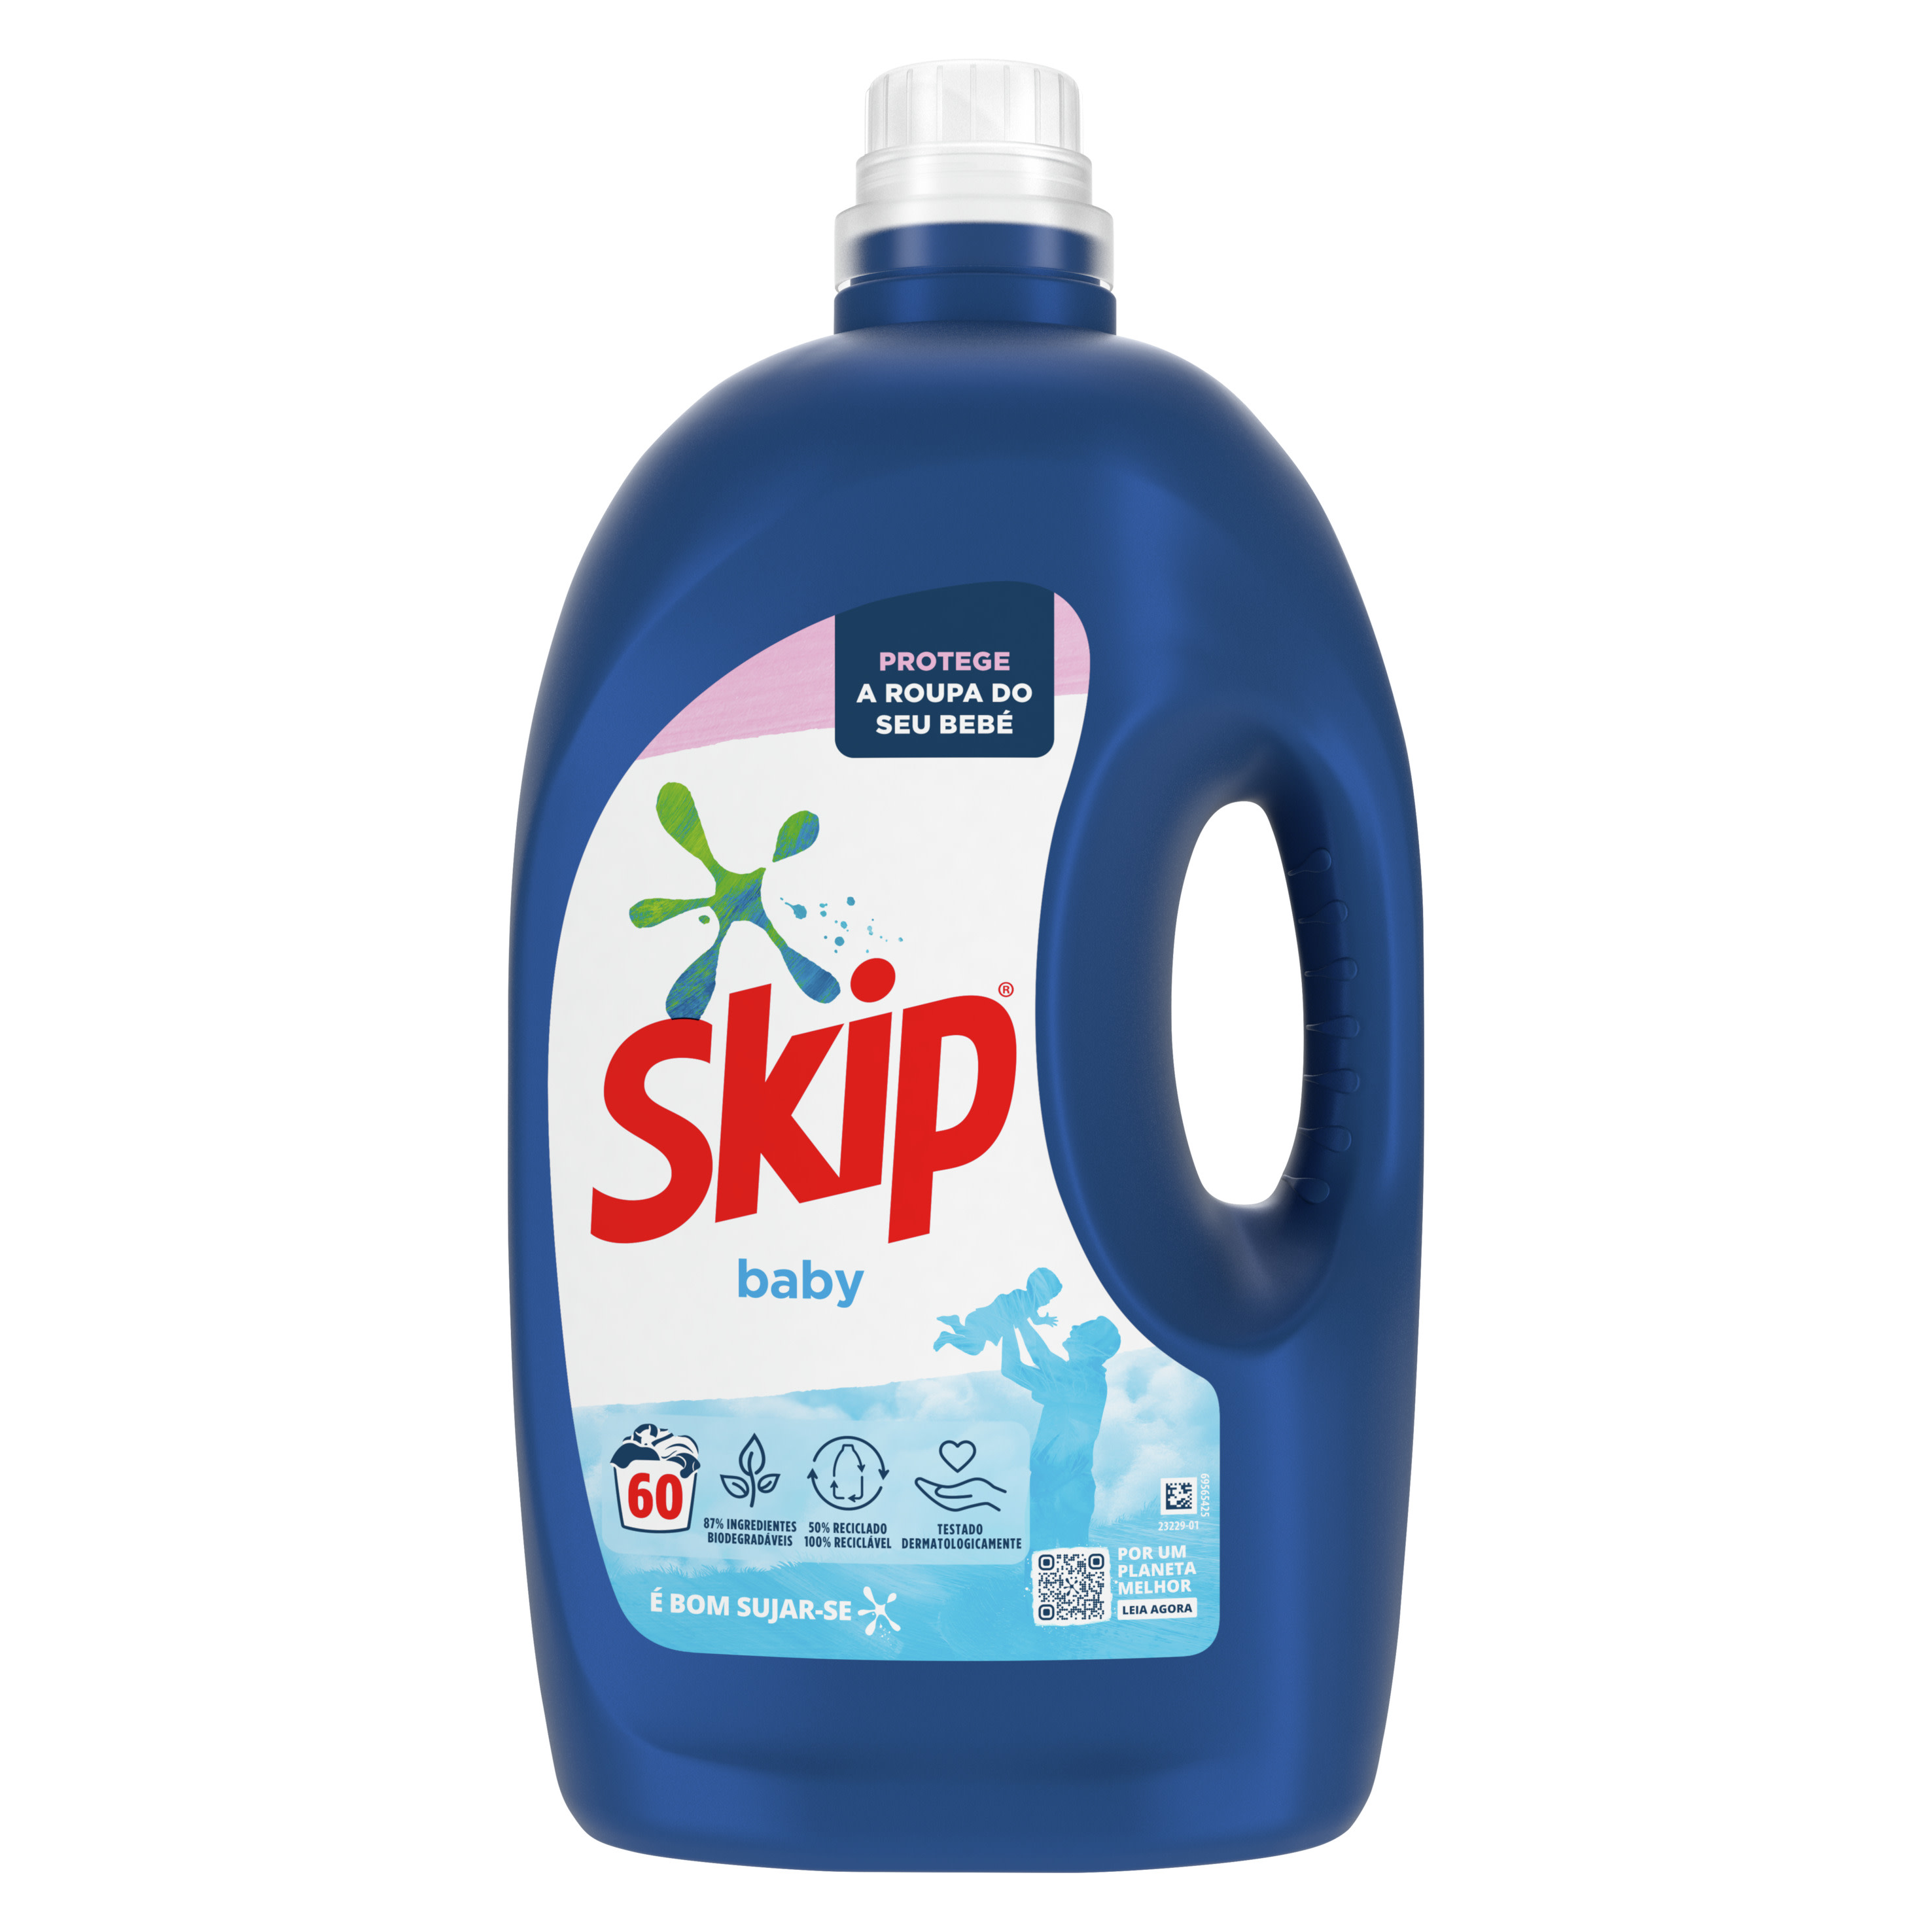 SKIP Detergente Líquido Baby packshot